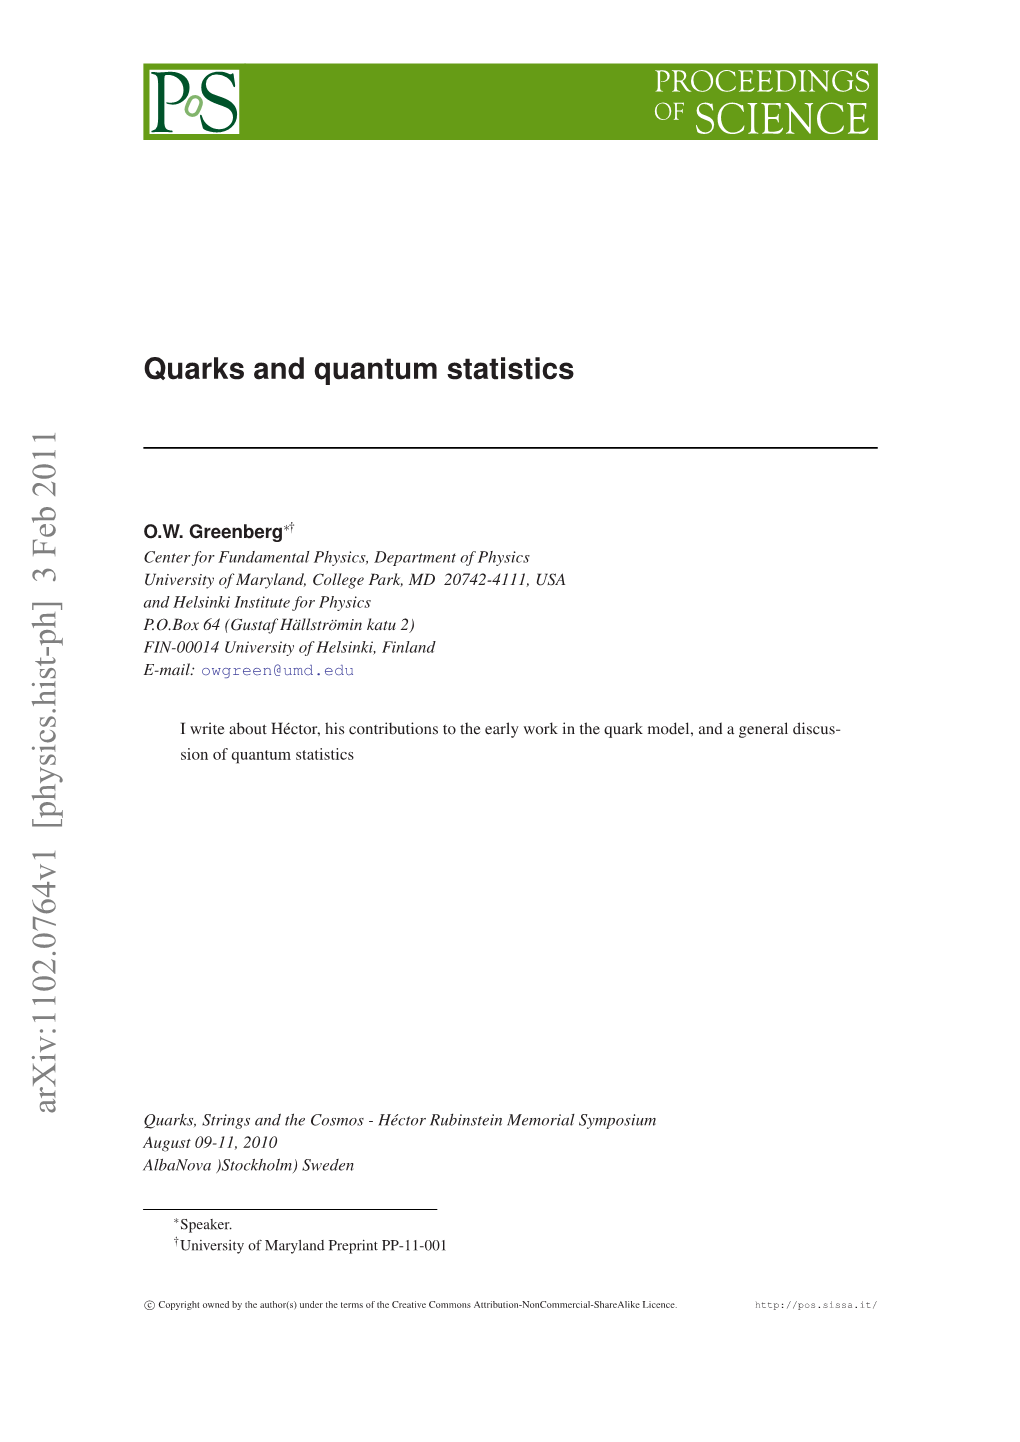 Quarks and Quantum Statistics